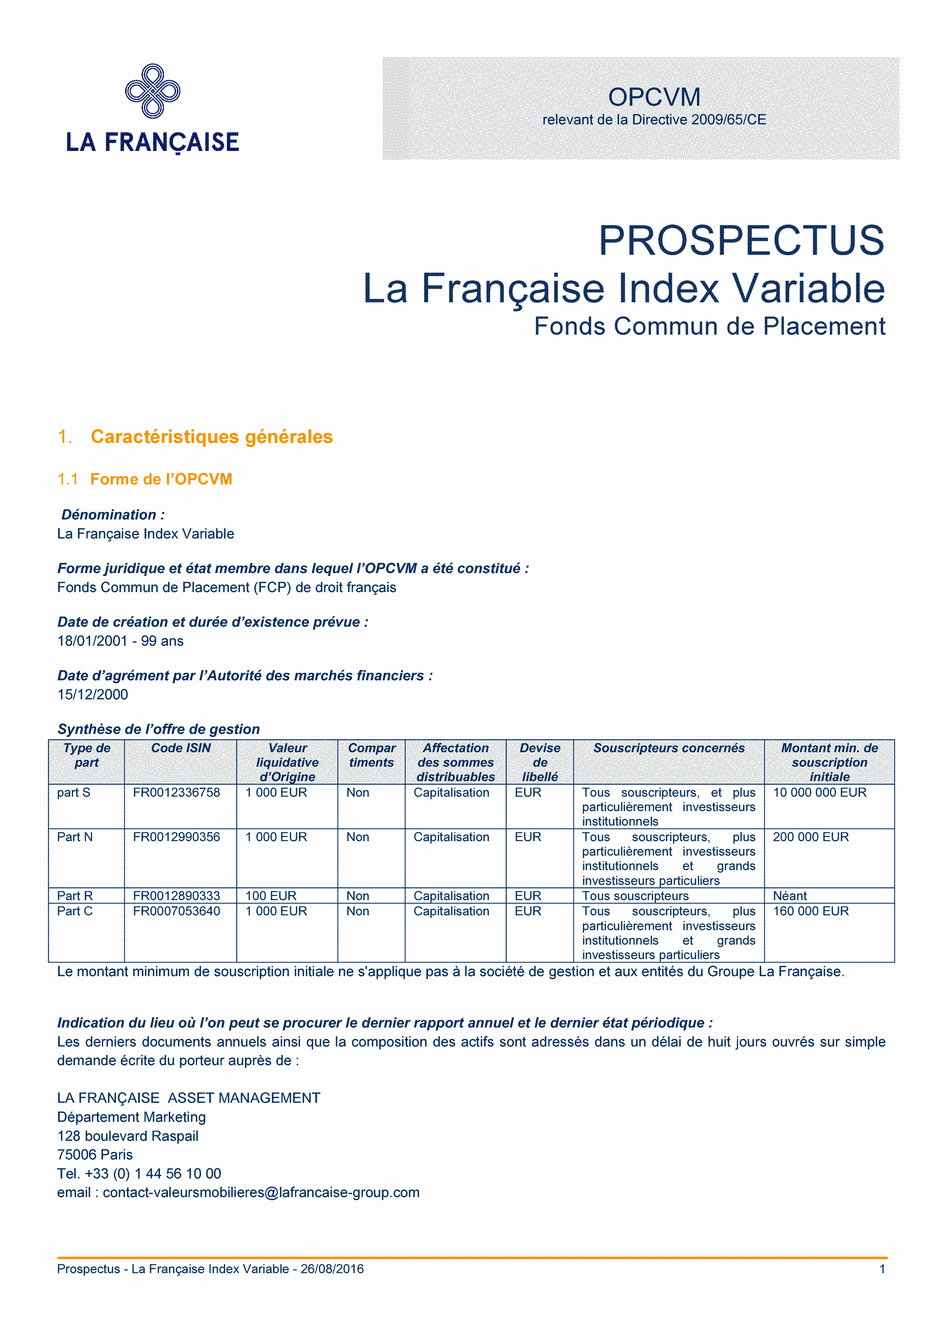 Prospectus La Française Index Variable - Part N - 26/08/2016 - Français